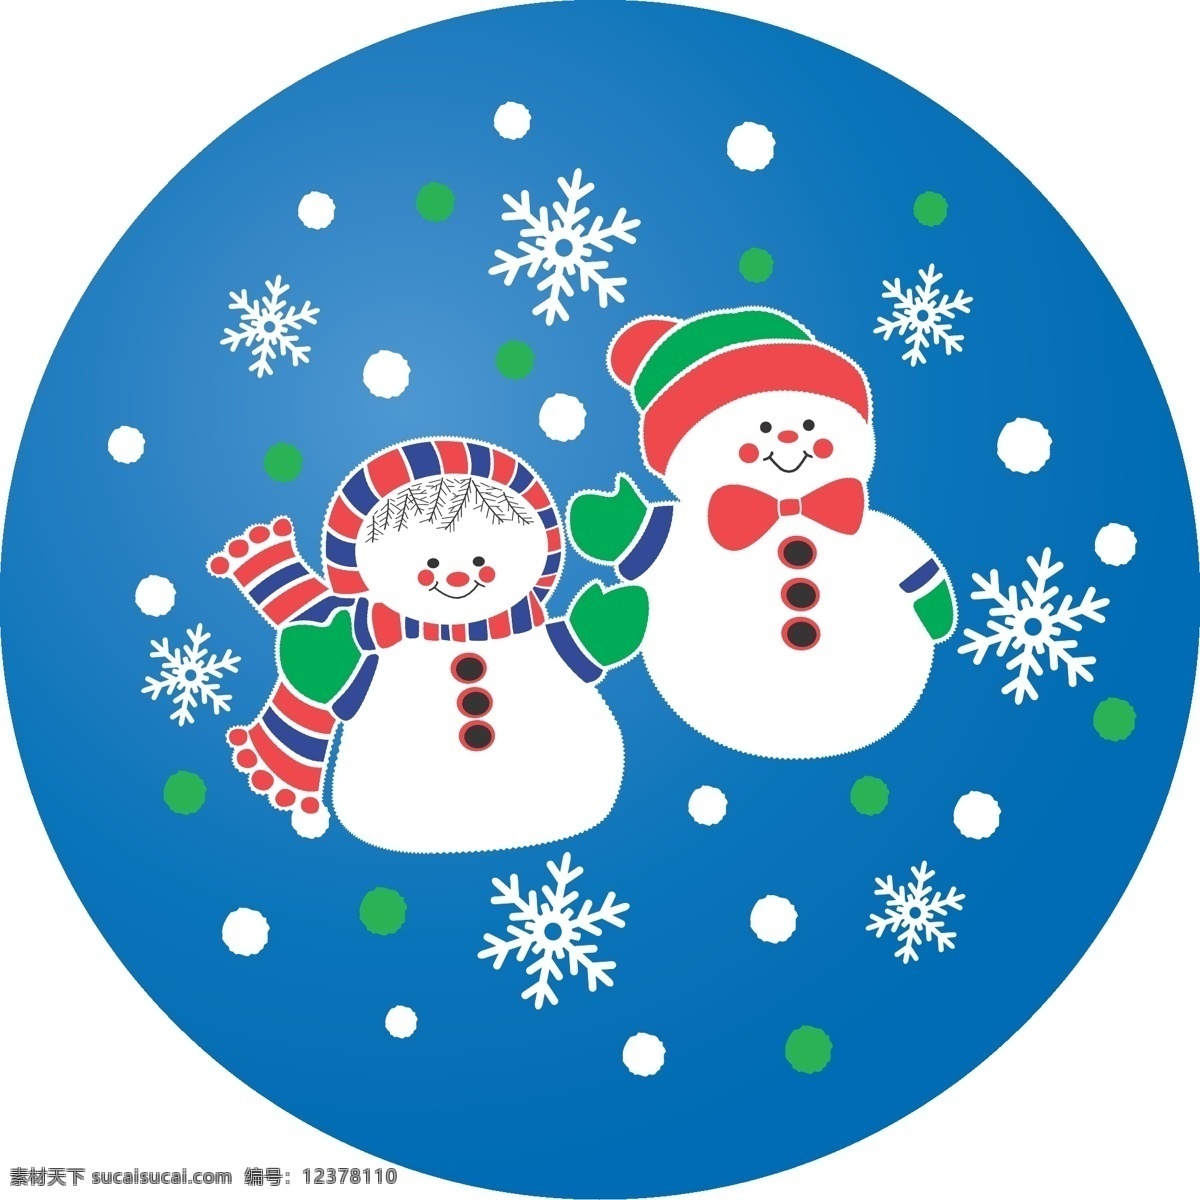 圣诞 雪人 冬天 节日素材 卡通雪人 男女 朋友 圣诞节 圣诞雪人 雪花 雪人男女 矢量 其他节日